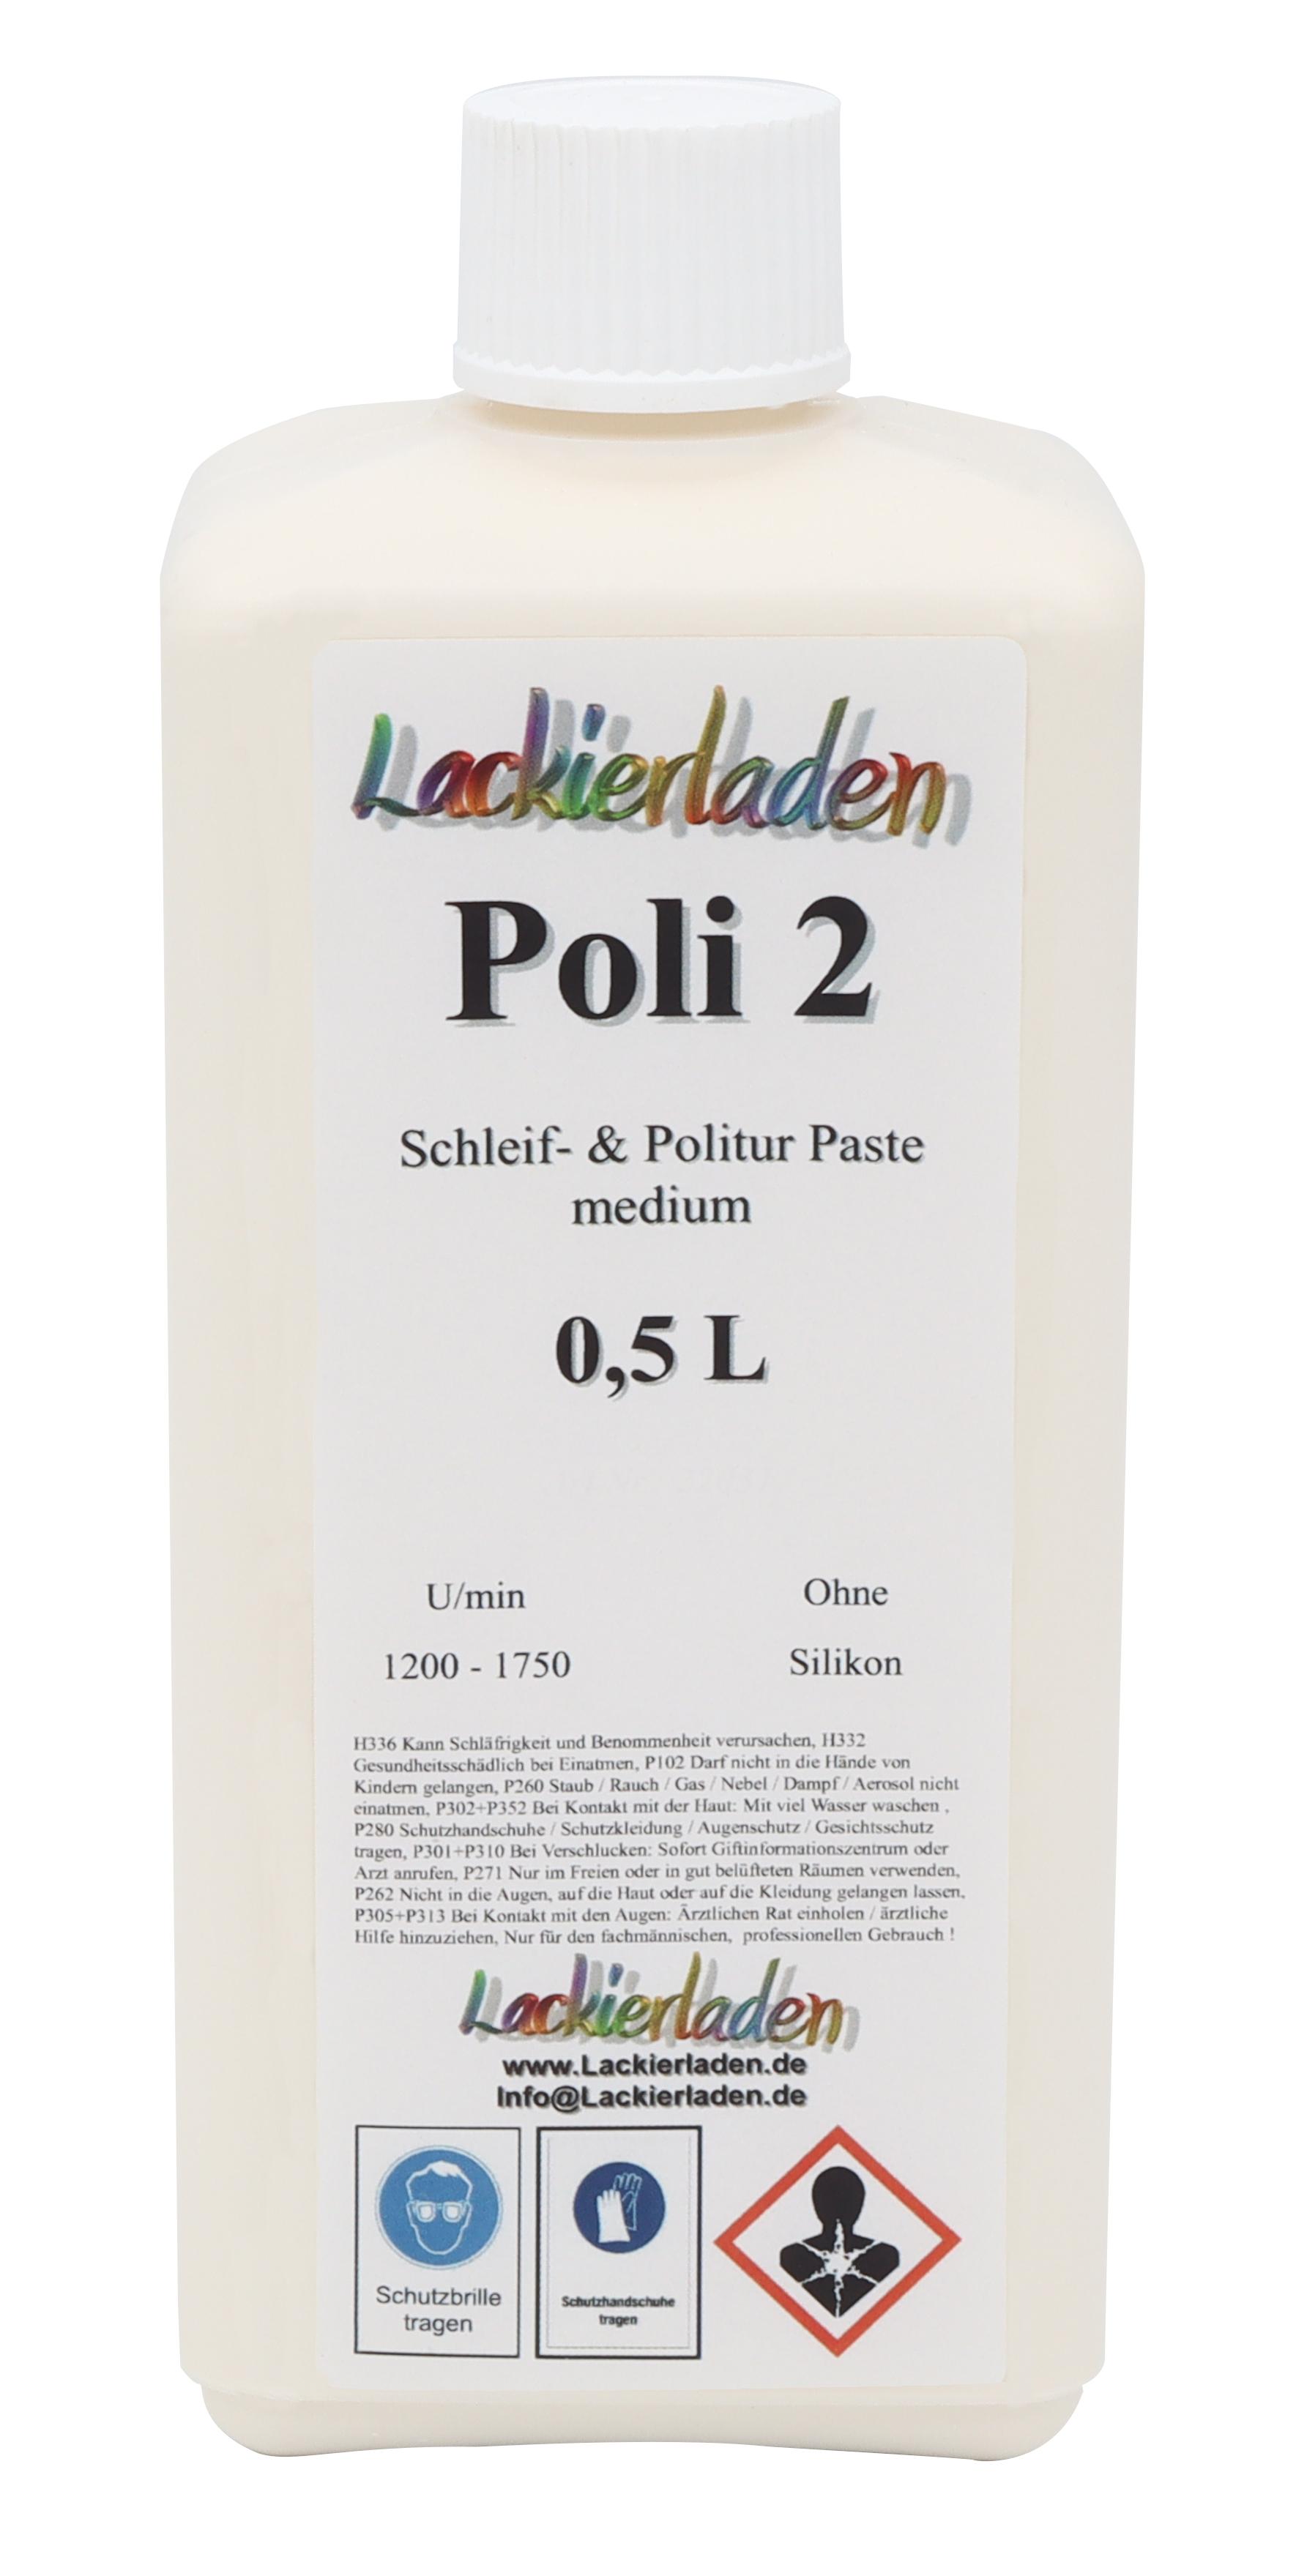 Poli 2 Schleif- & Politur Paste medium 0,5 L | Polierpaste Schleifpaste polieren